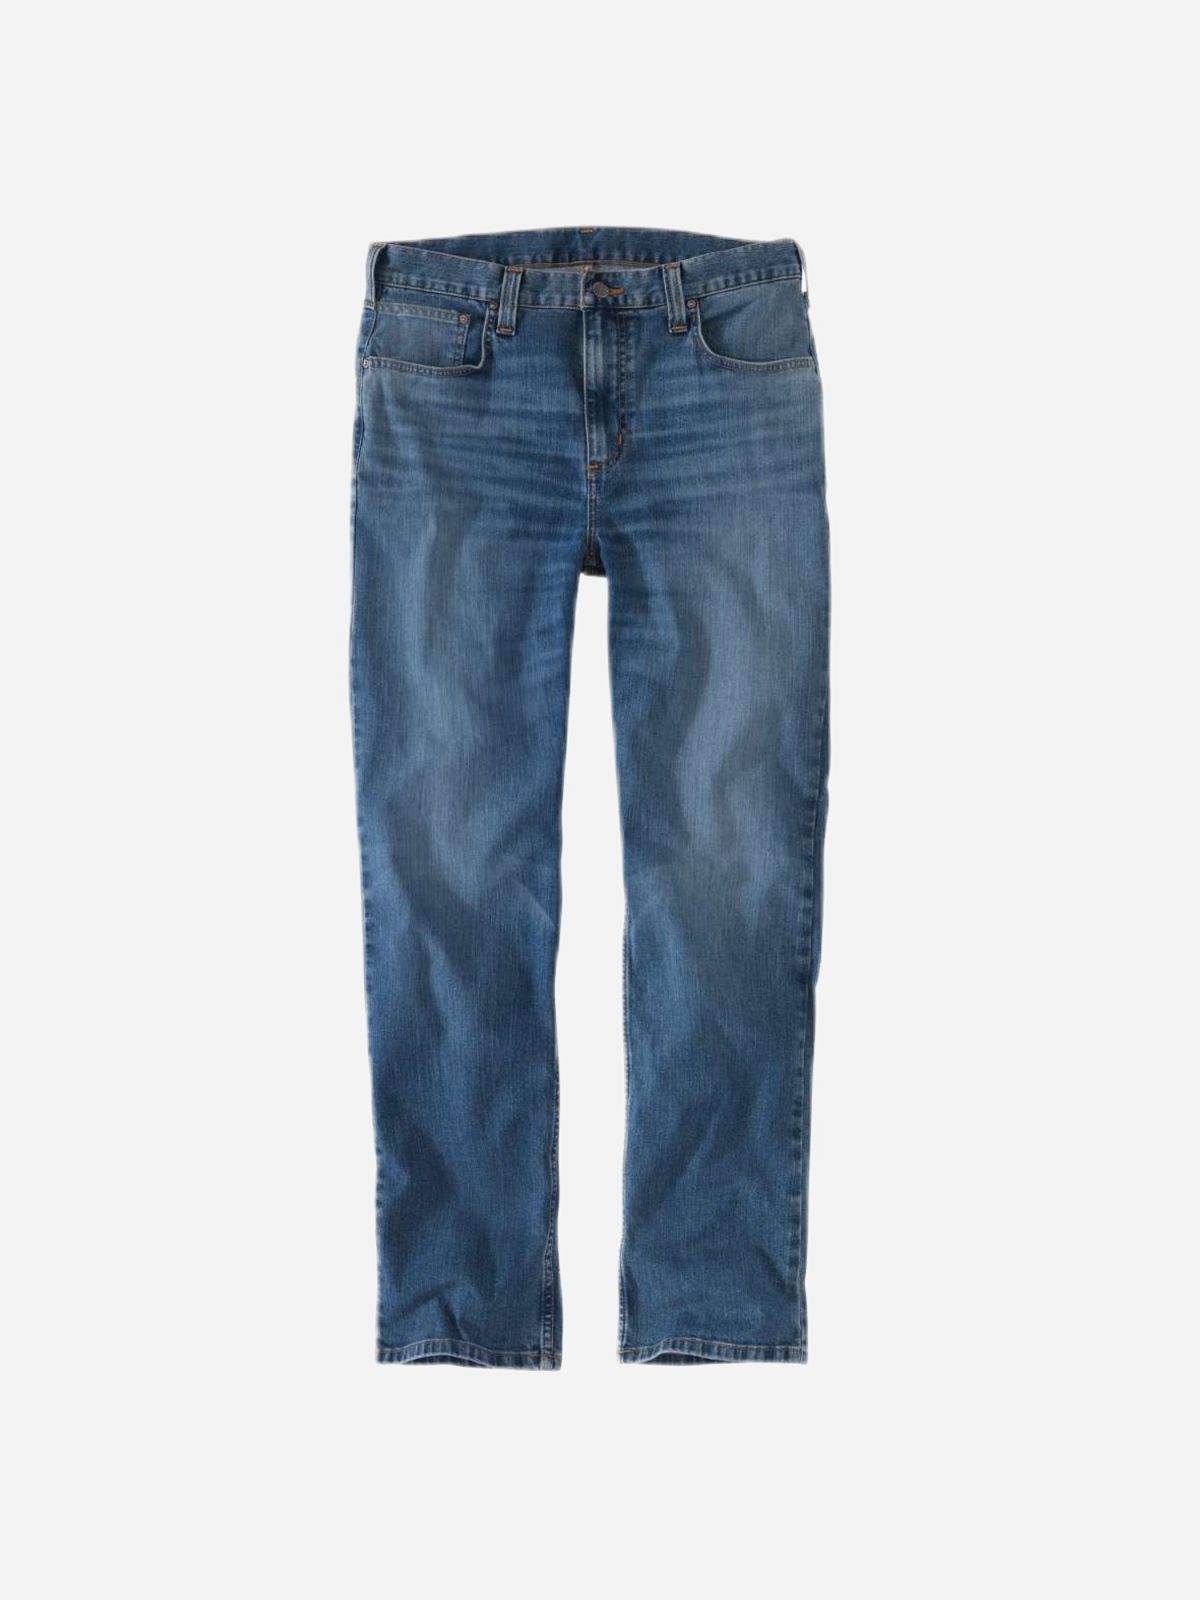  ג'ינס ארוך ווש של CARHARTT